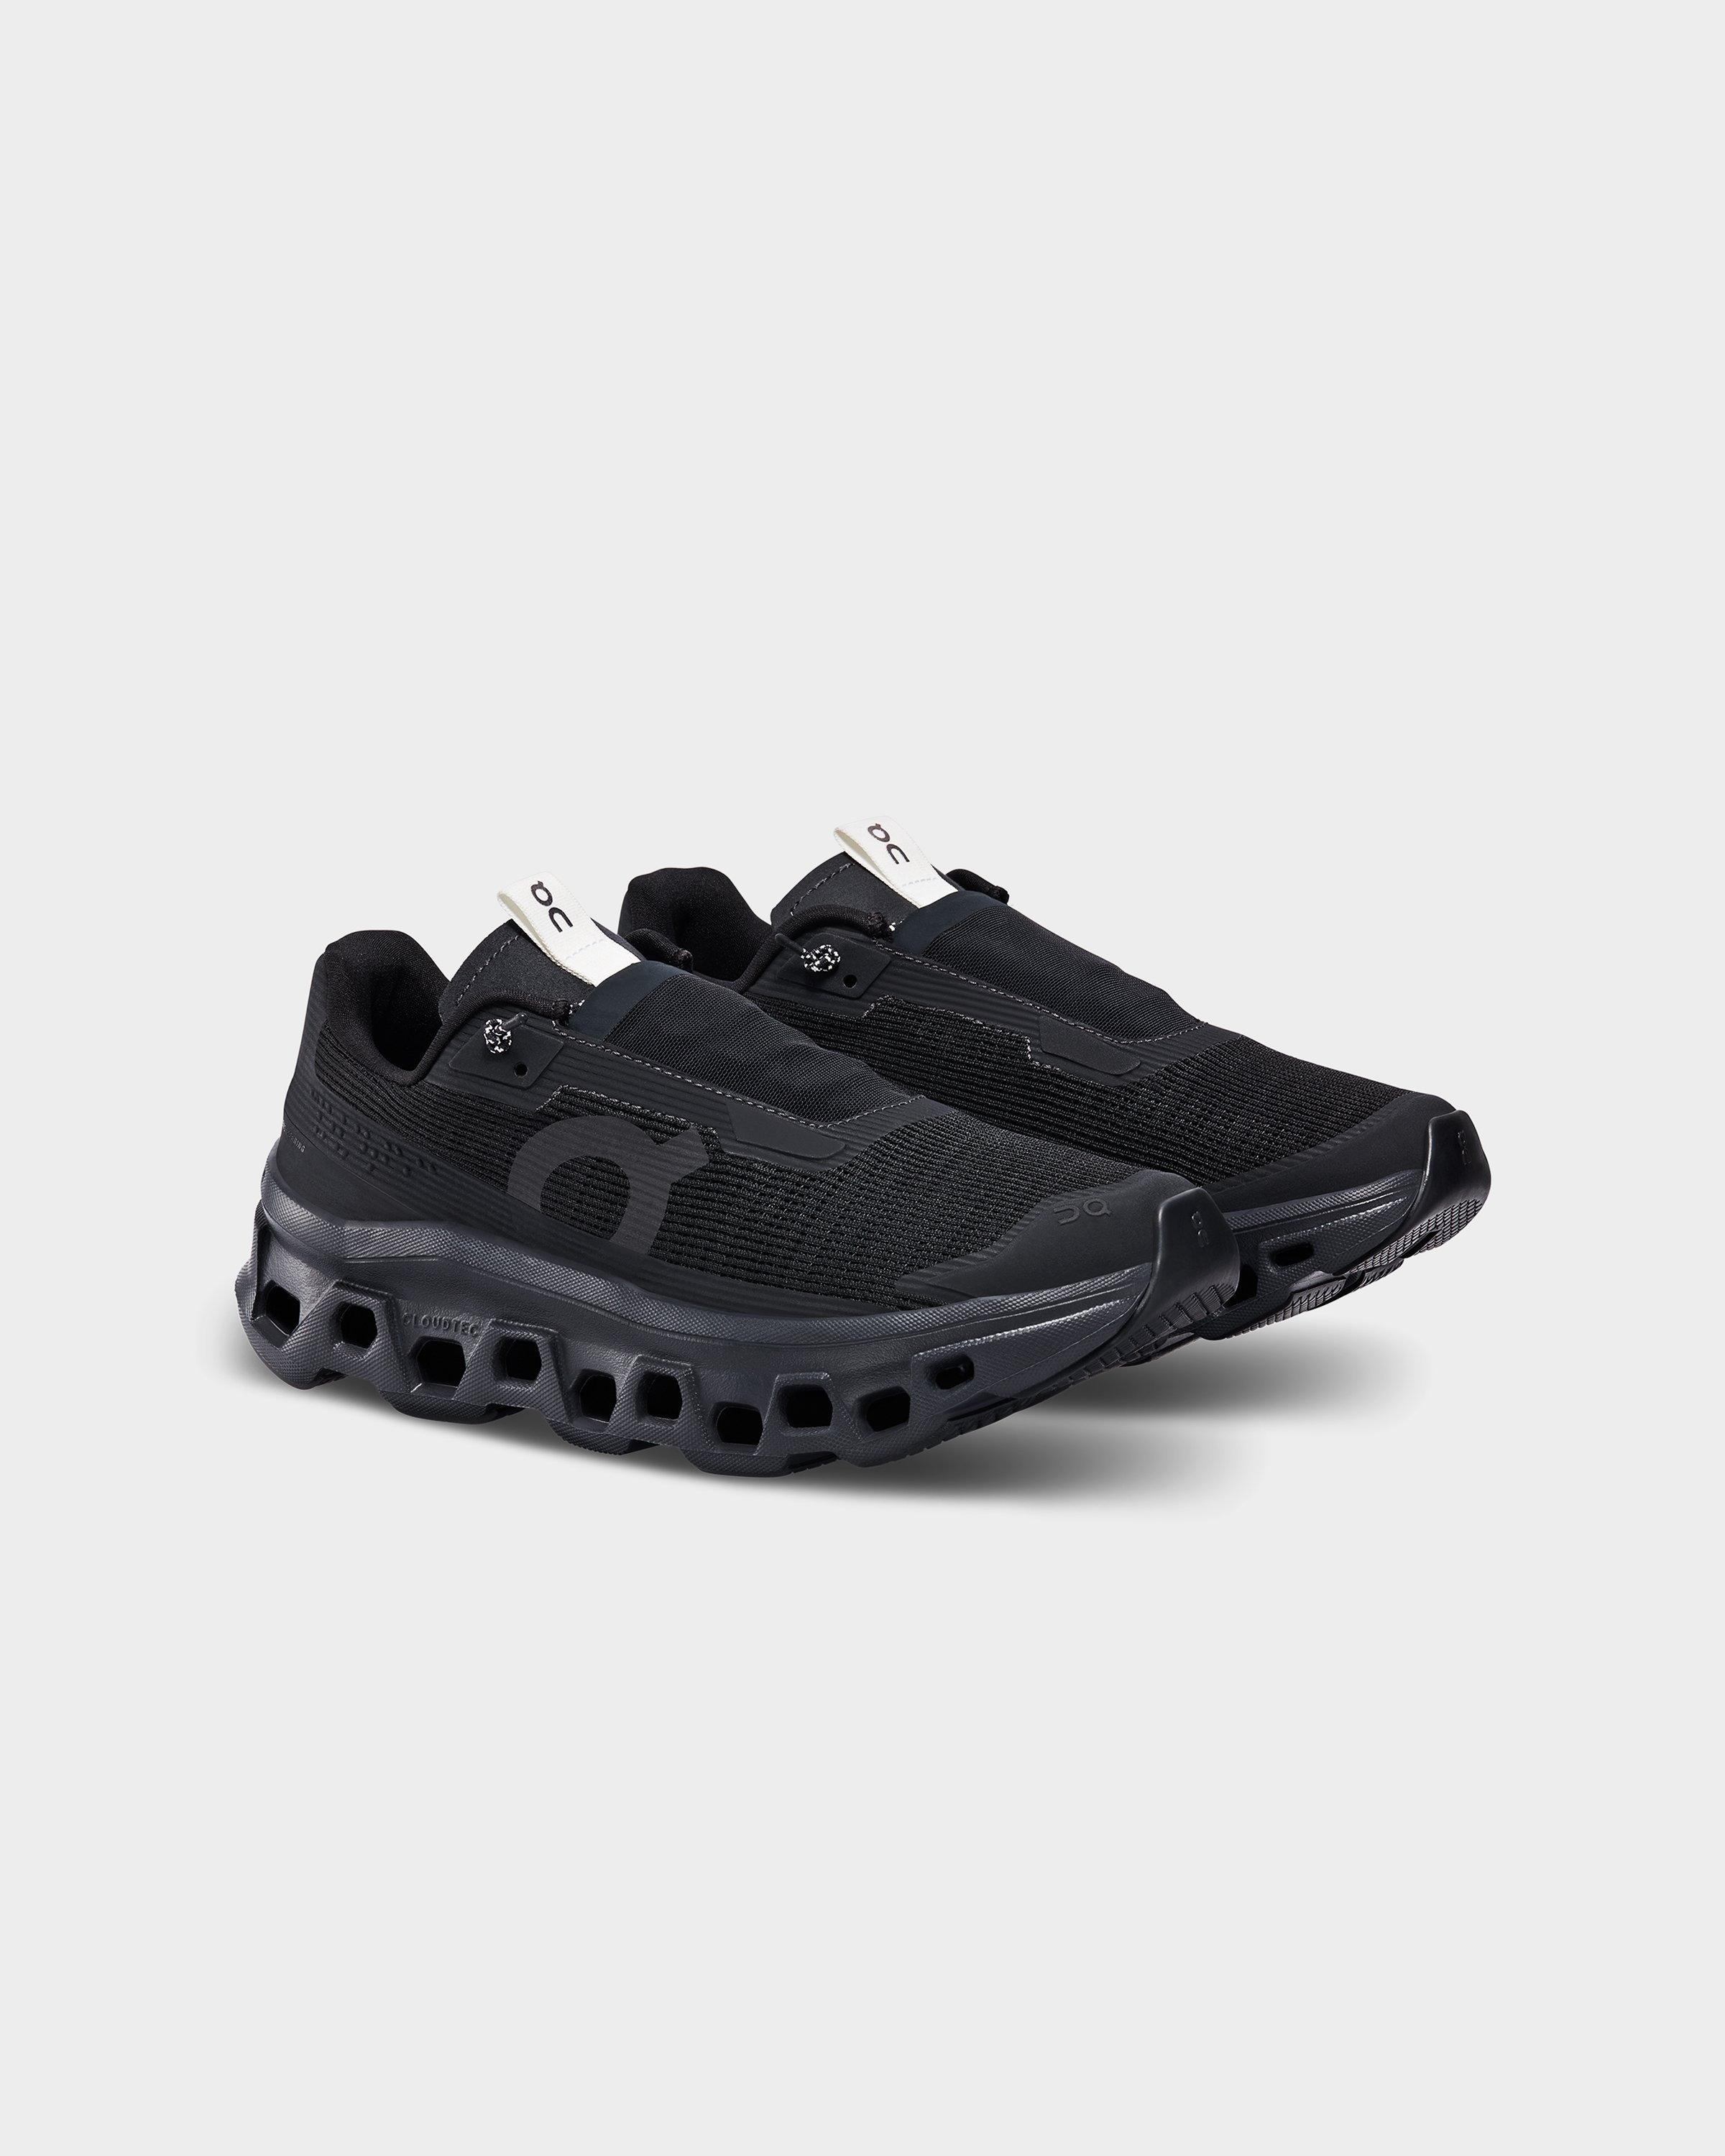 On – Cloudmonster Sensa Black - Sneakers - Black - Image 3